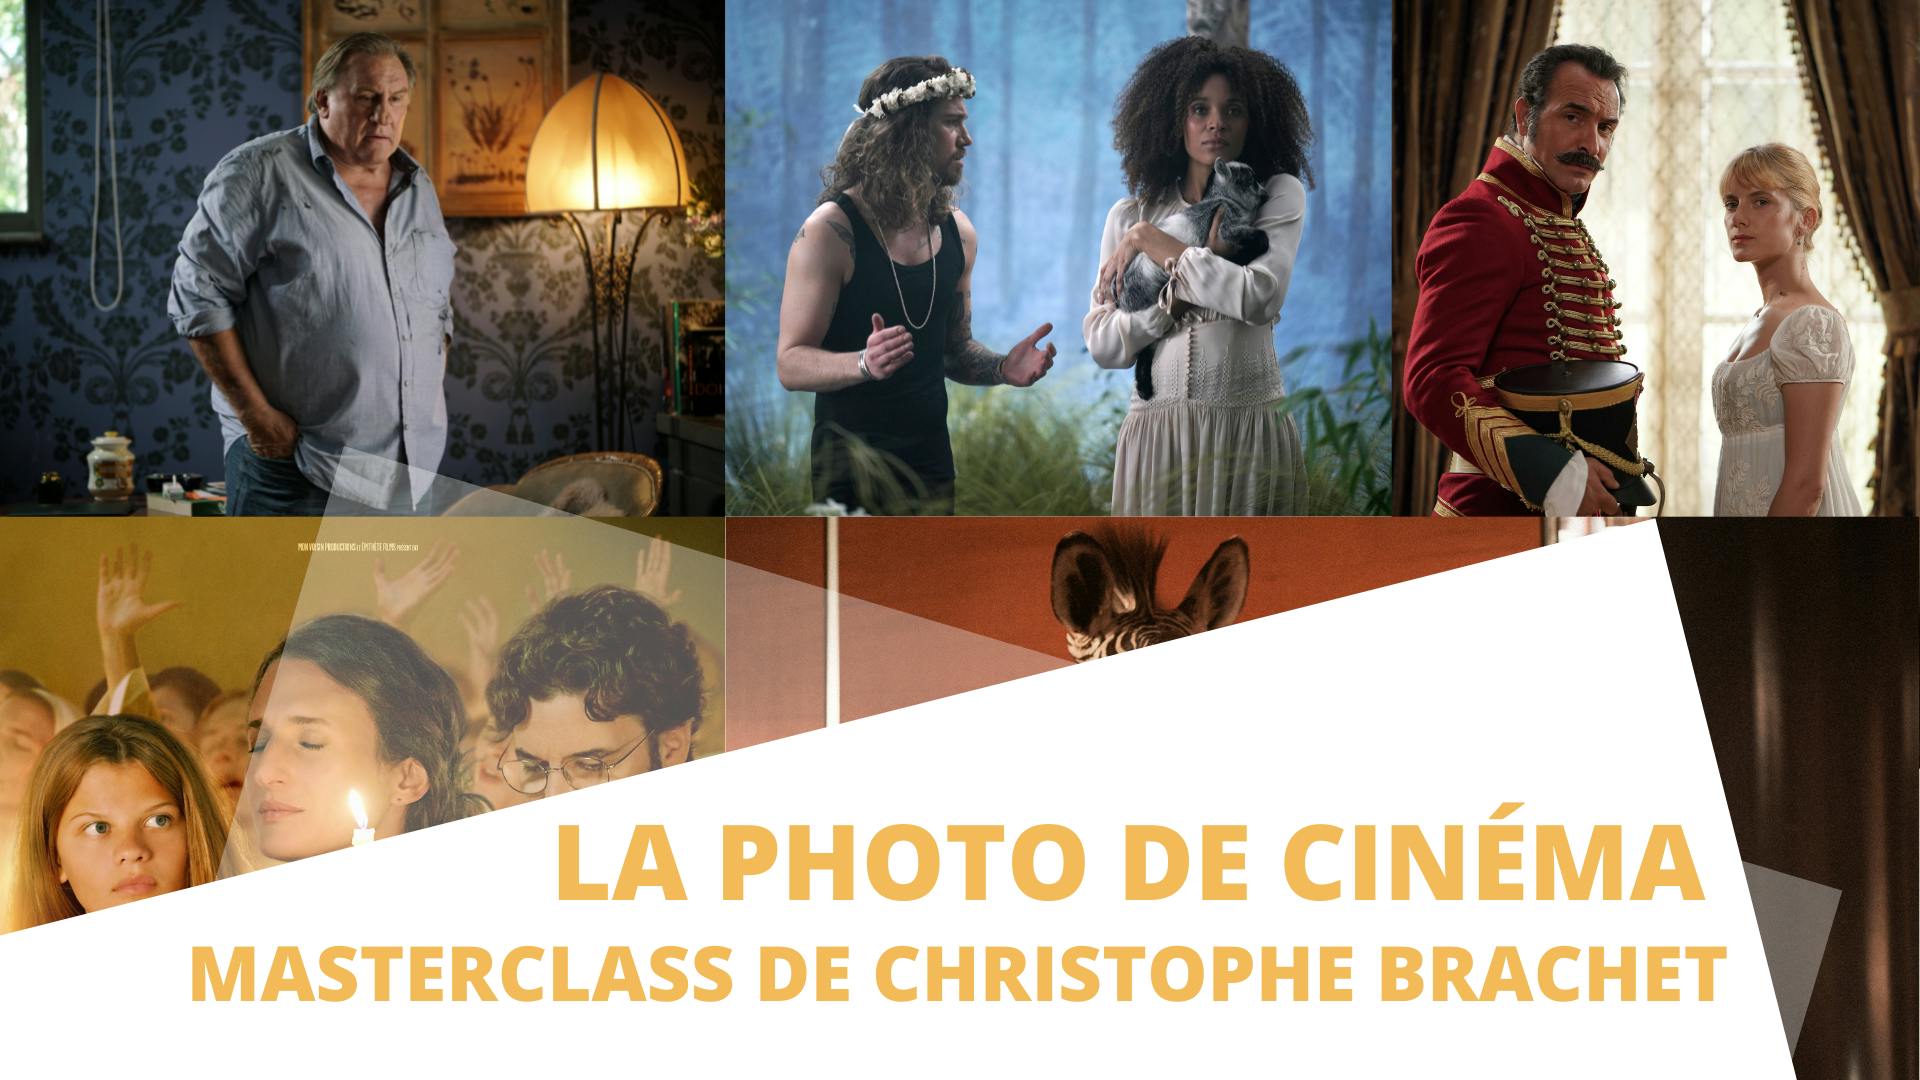 La photo de cinéma - Masterclass de Christophe Brachet